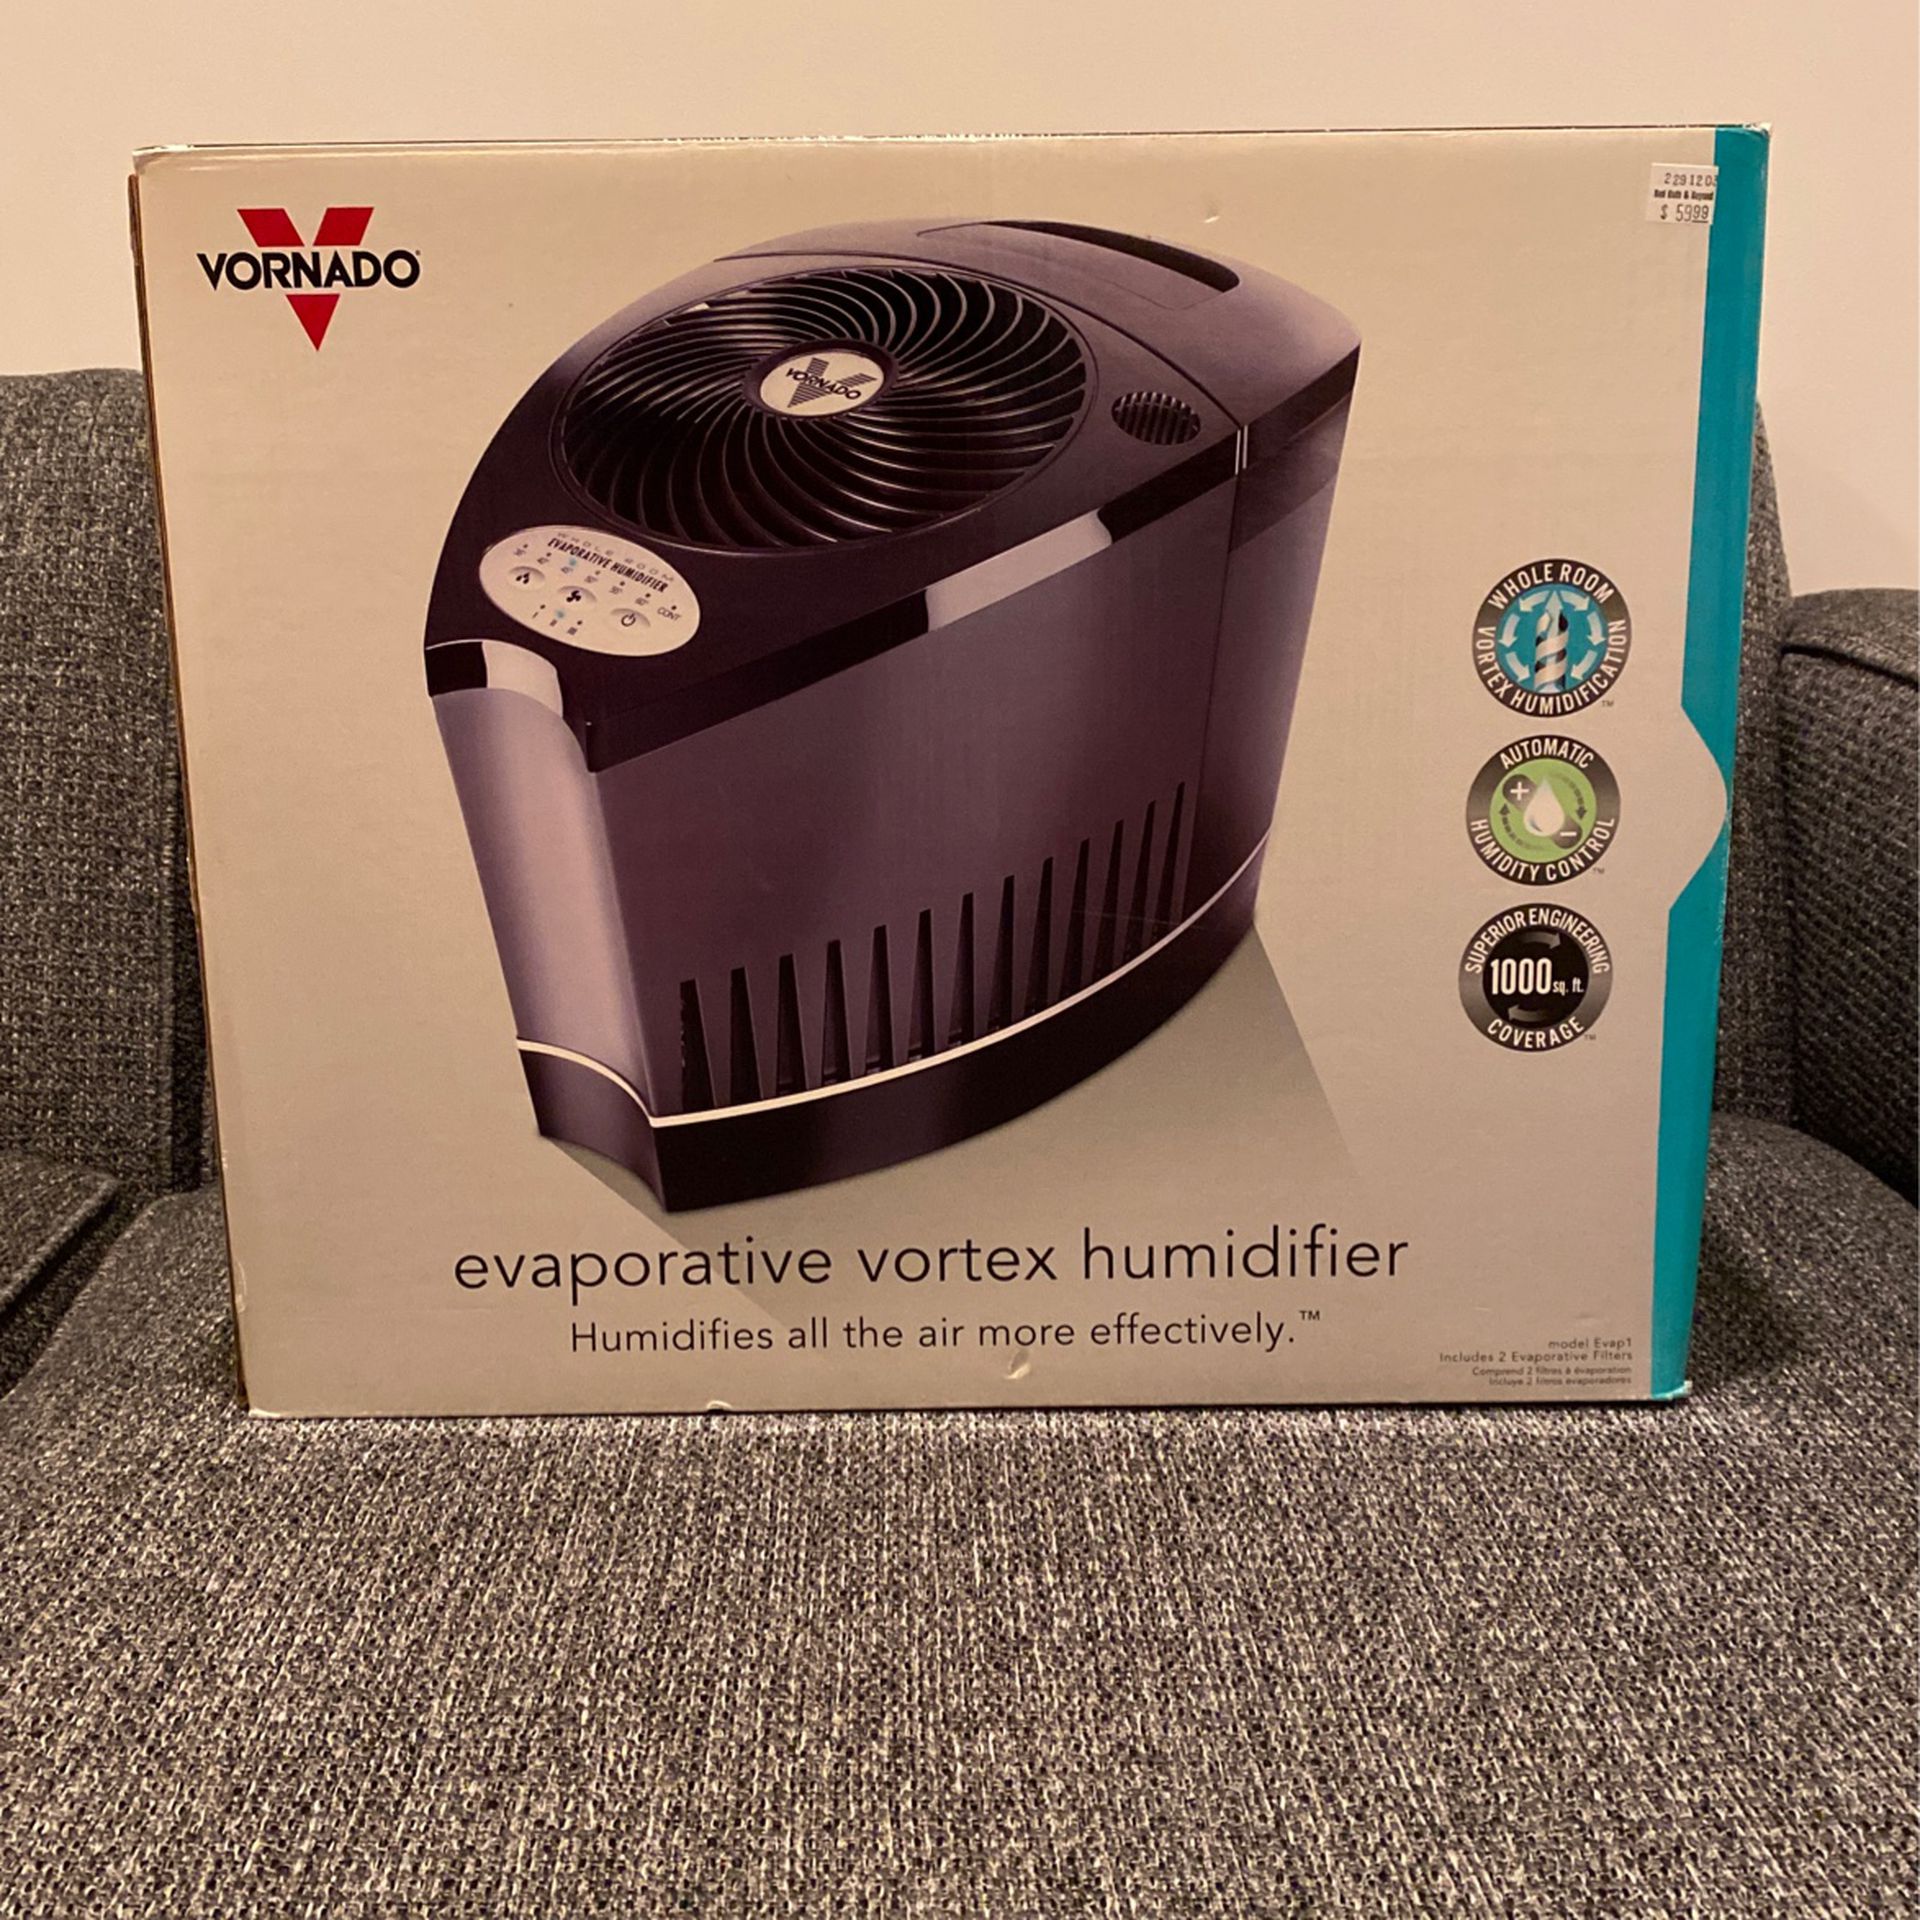 Vornado Evaporative Vortex Humidifier